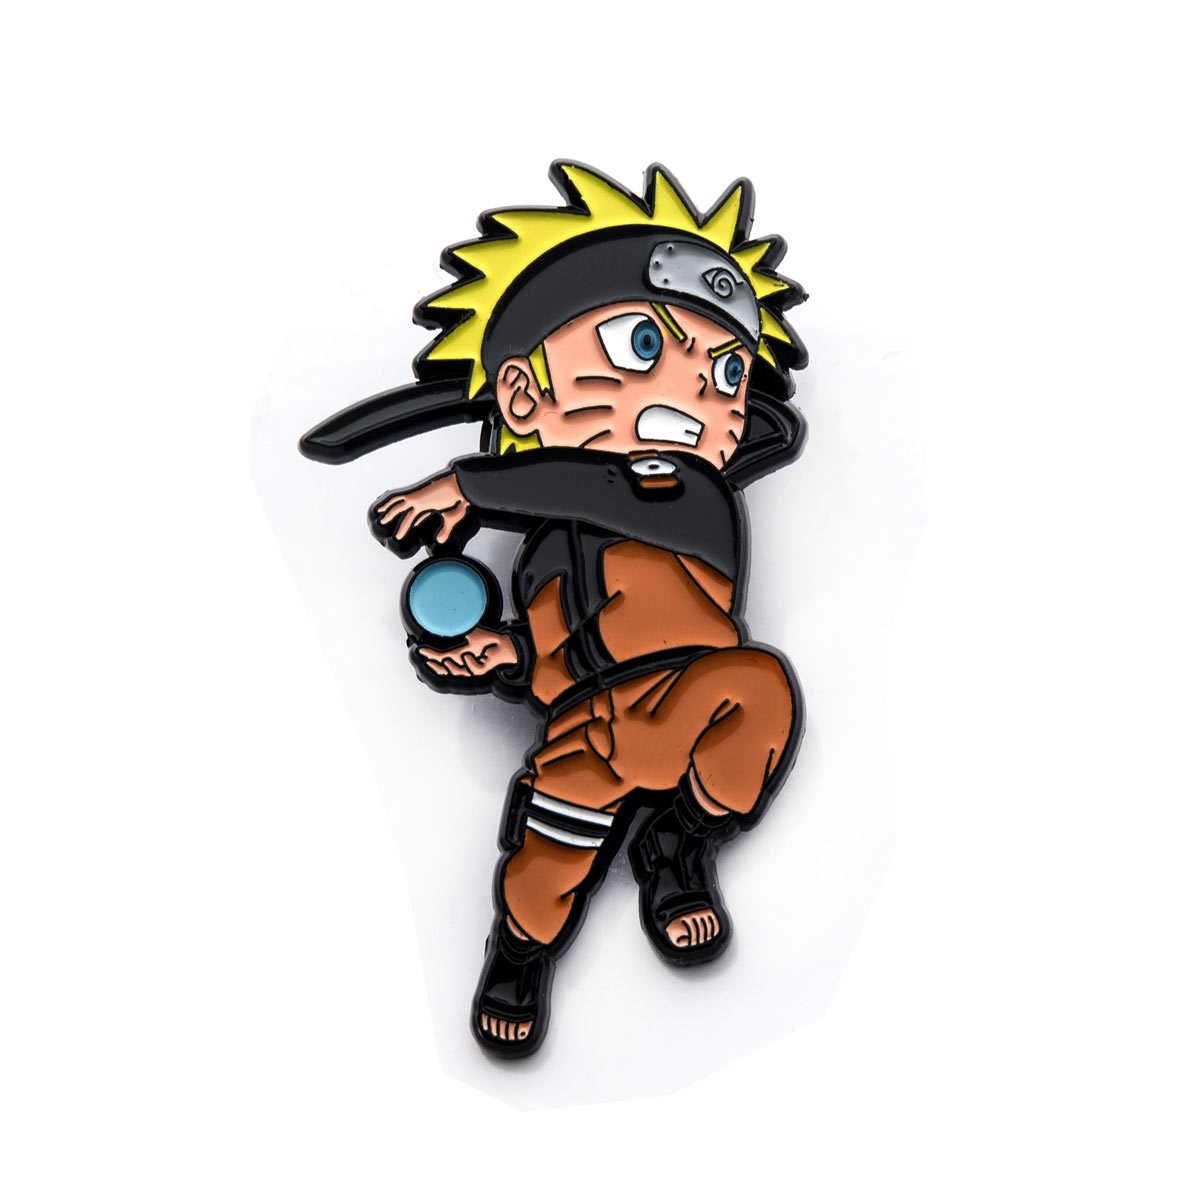 Naruto chibi pin sẽ làm cho bạn phấn khích và thích thú. Đây là sản phẩm mà bạn không thể bỏ qua! Hãy xem một bức tranh Naruto chibi pin ngay hôm nay để có được niềm vui và sự phấn khích trong cuộc sống.